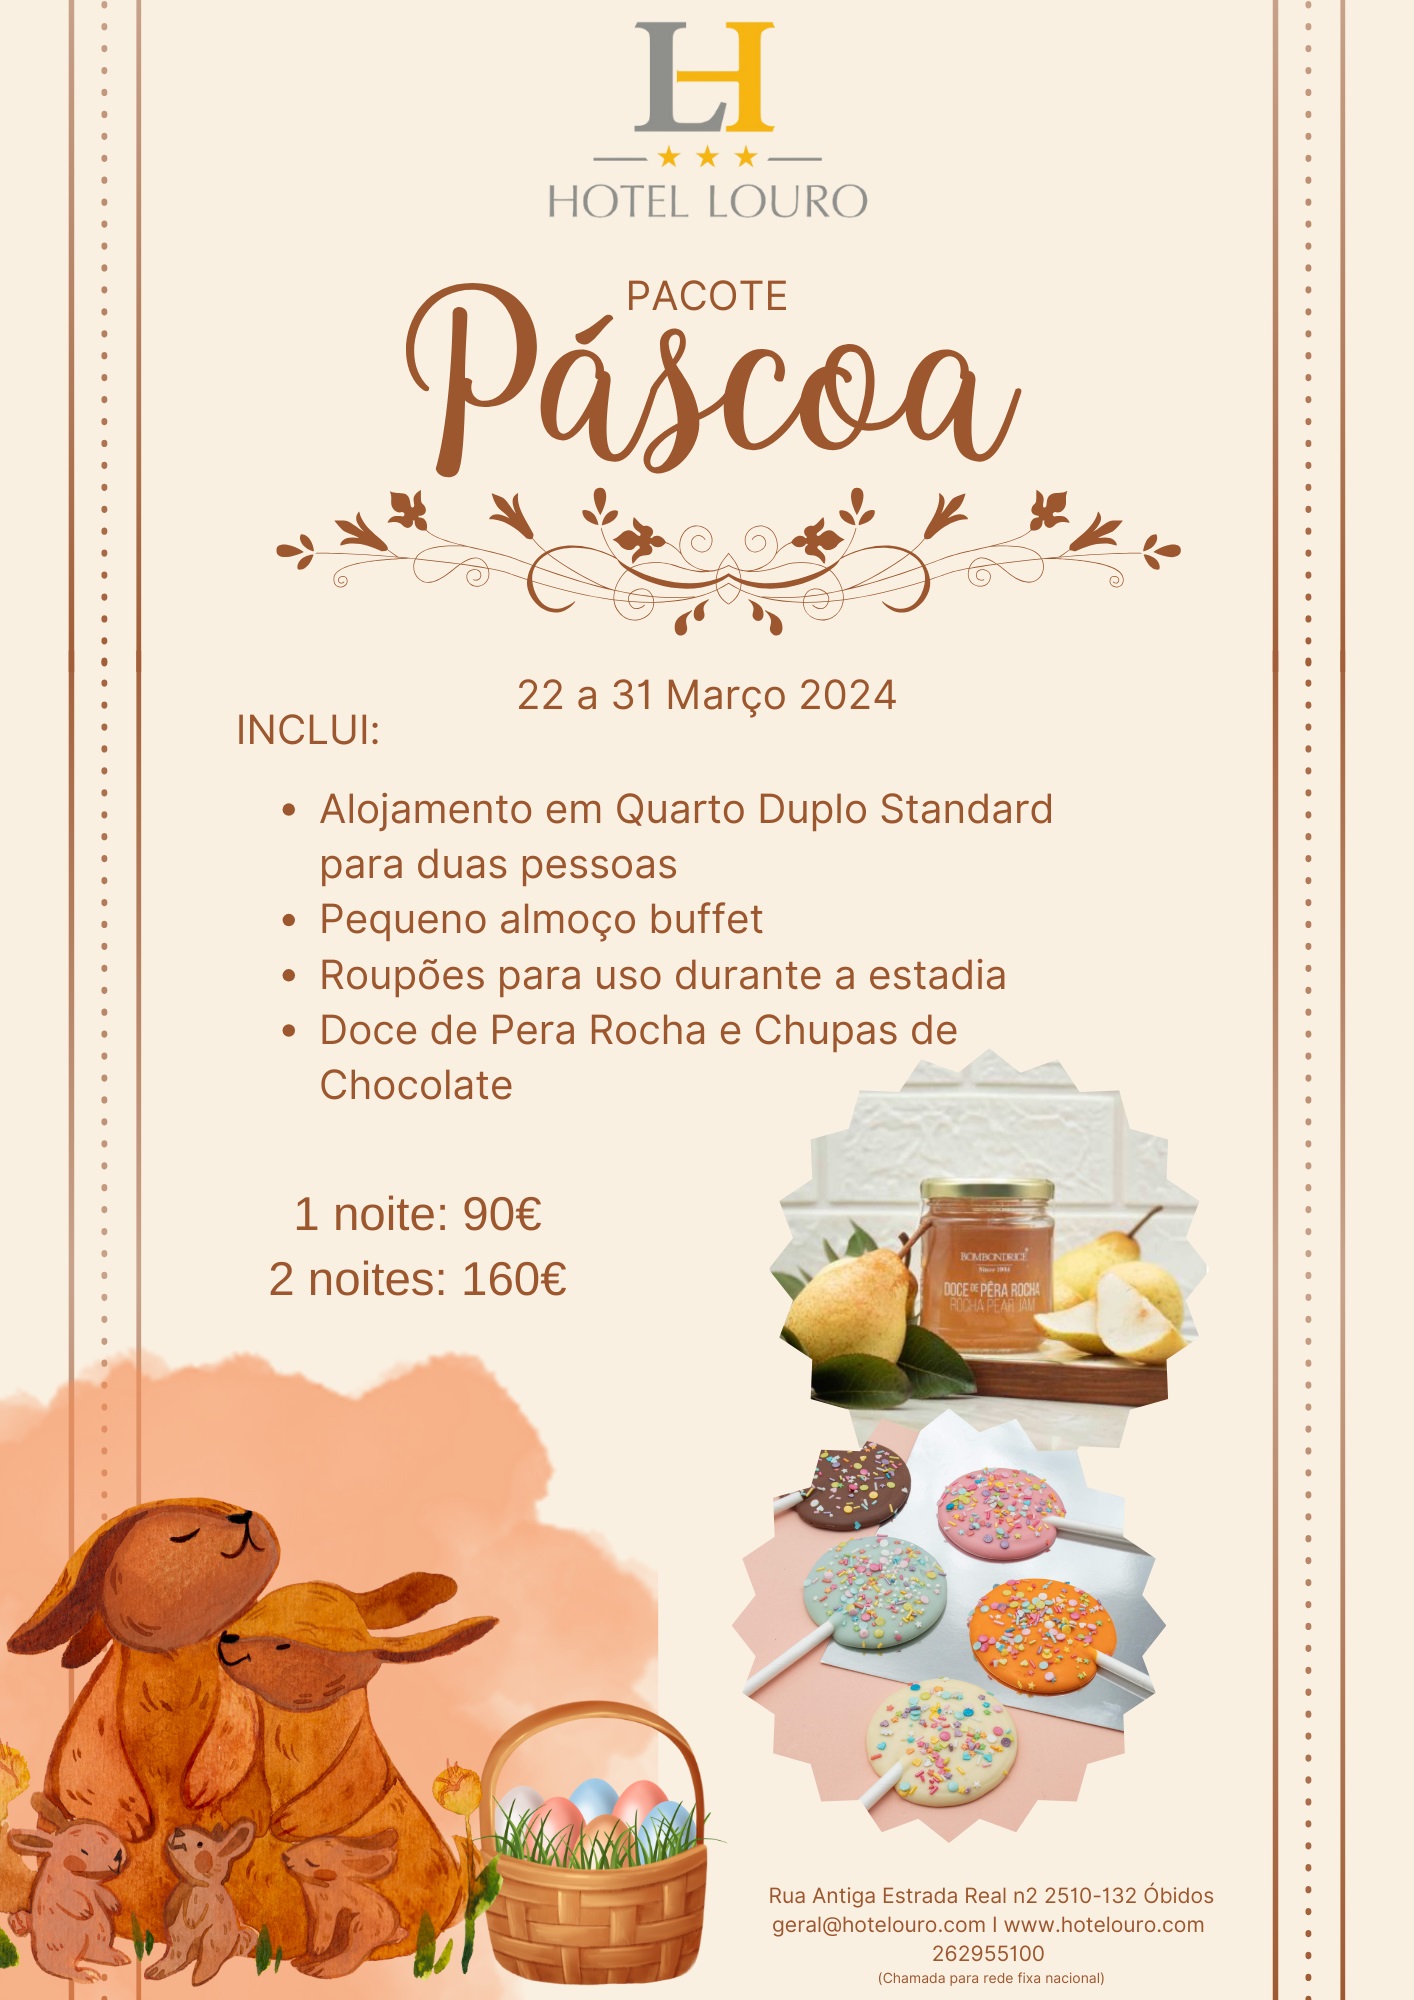 PacotePascoa.jpg